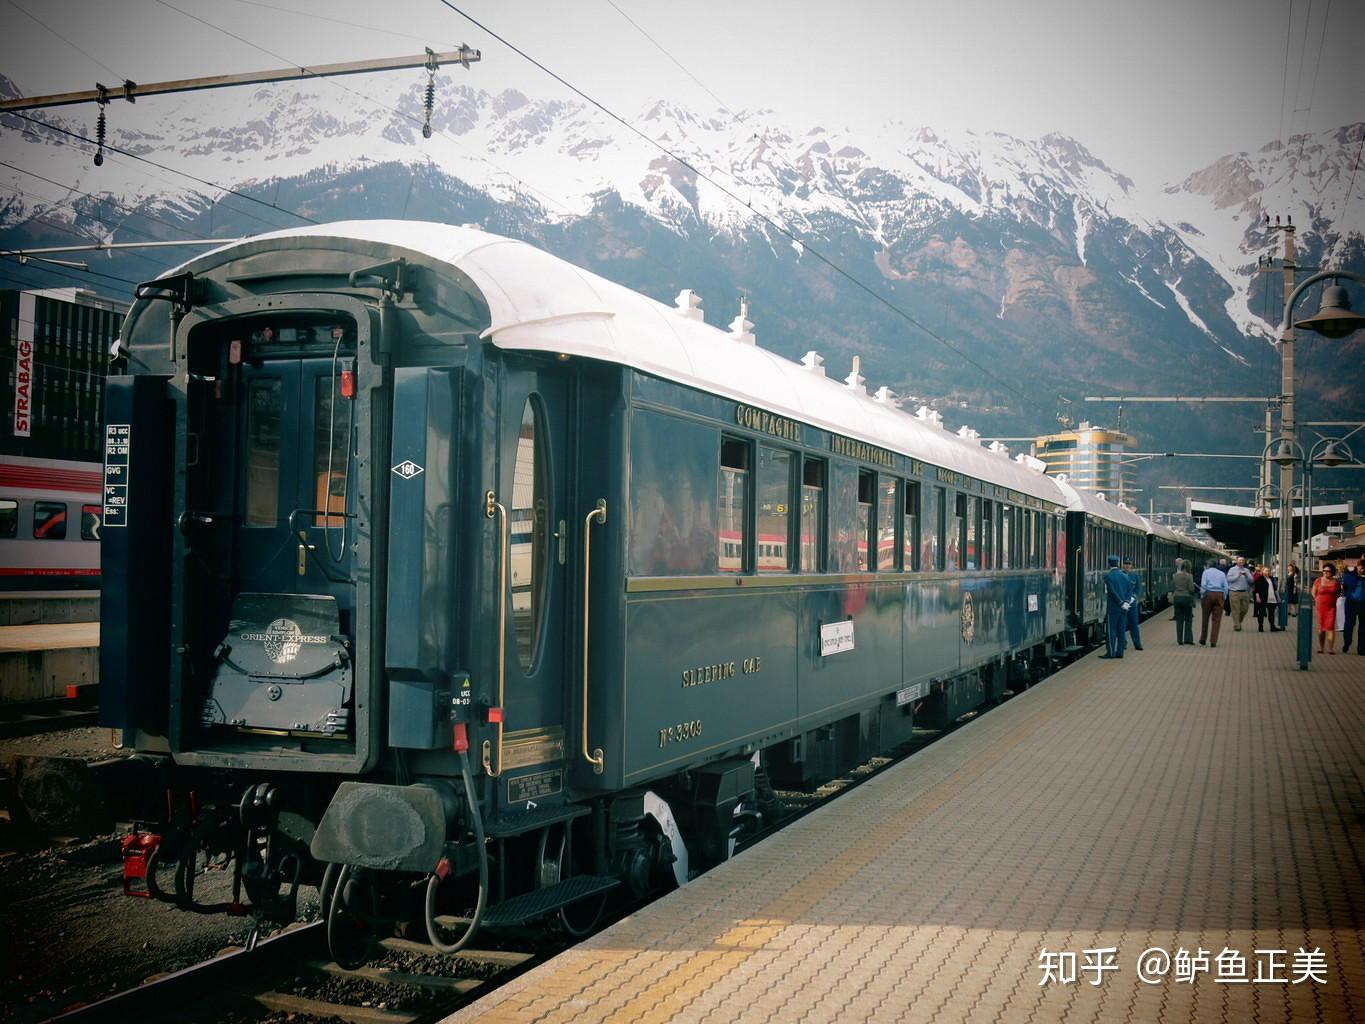 盘点全世界最顶级的豪华列车，中国有一条高铁线路也入选在内!